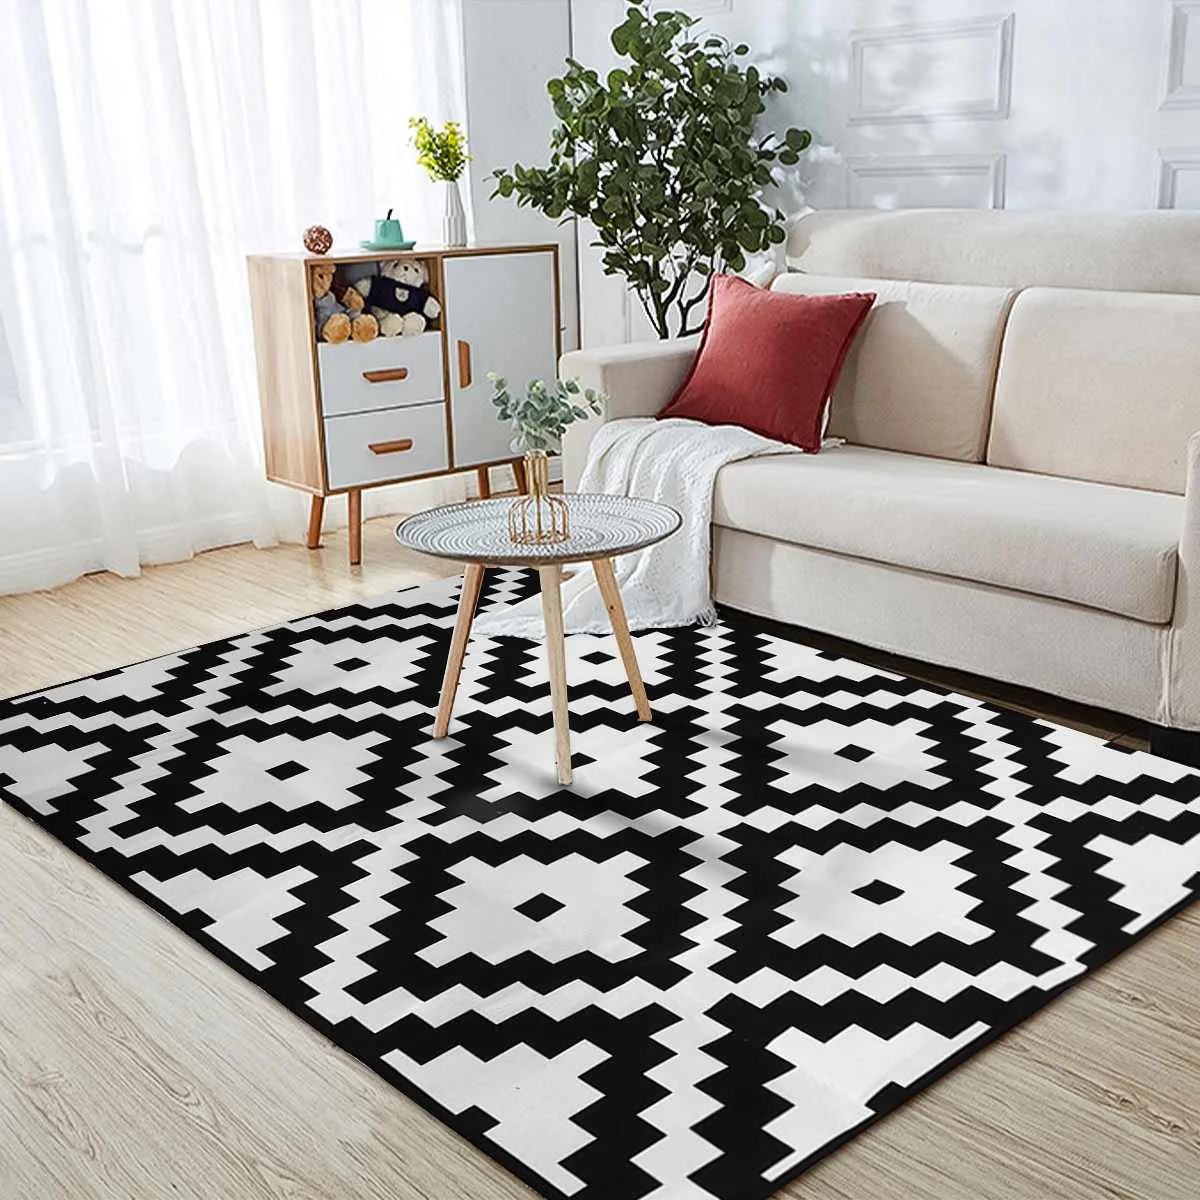 Modern 3D Diamond Design Rugs New Ethnic Pattern Mats Living Room In Black White 